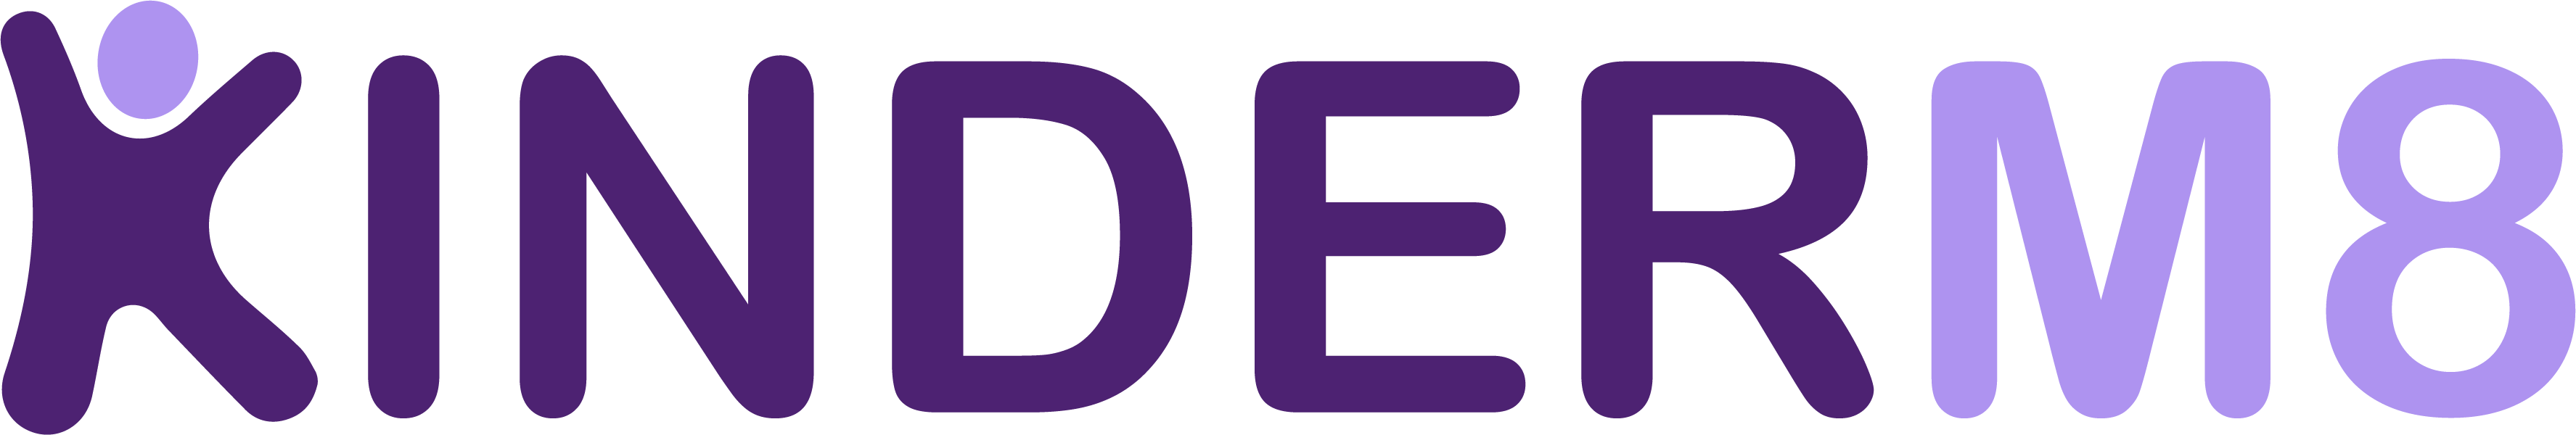 01 primary logo